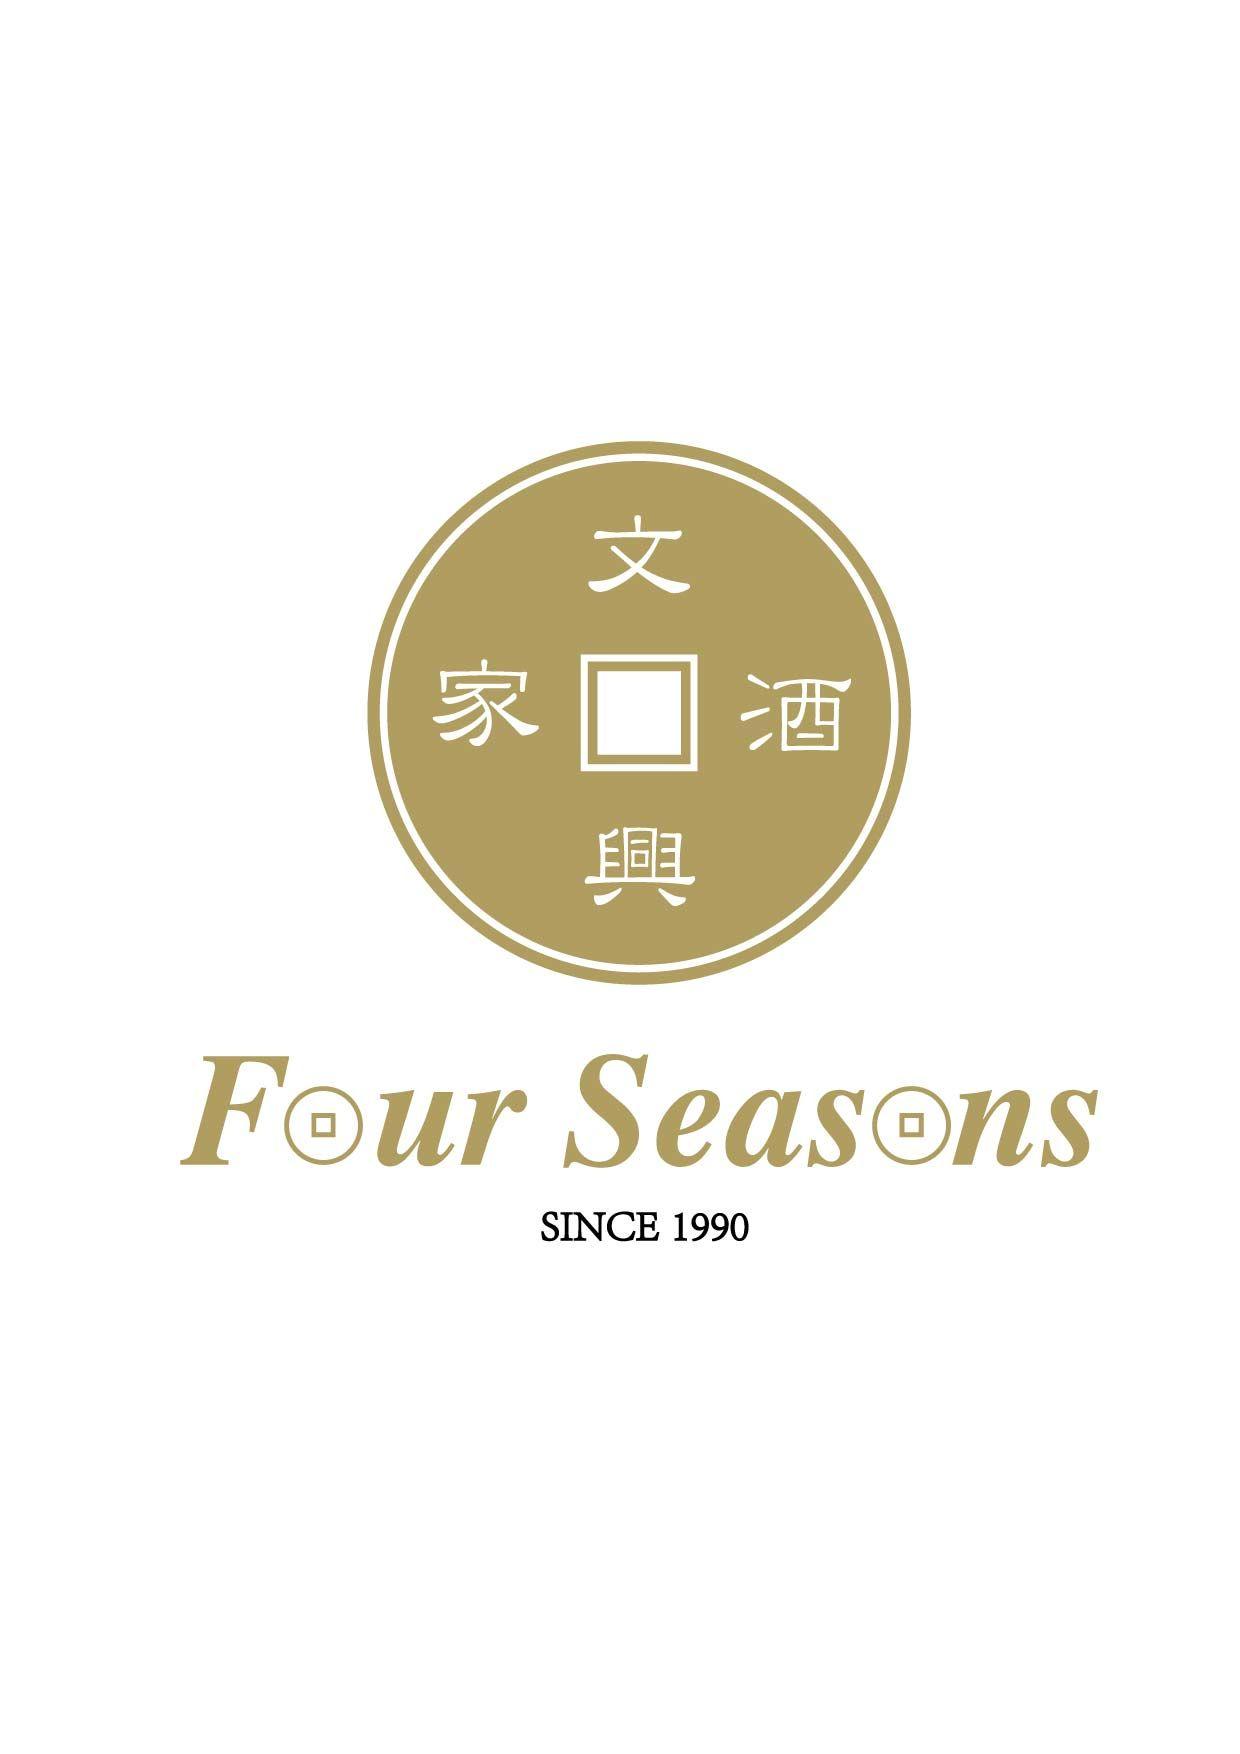 Four Seasons Logo - Four seasons logo - Bang Bang Oriental